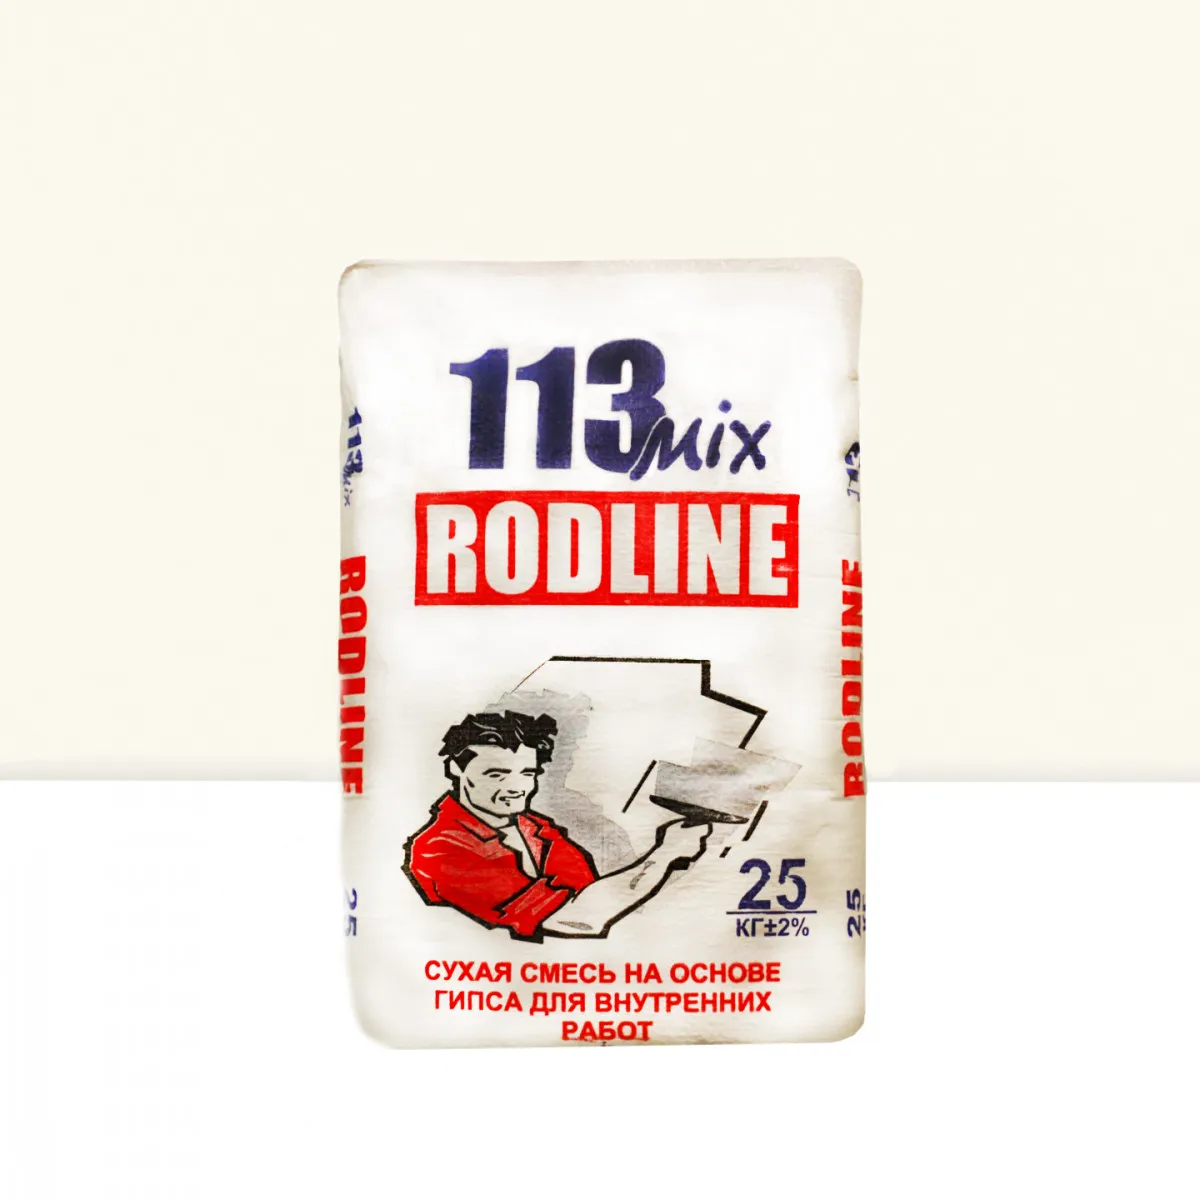 Сухая смесь Rodline на основе гипса для внутренних работ#1